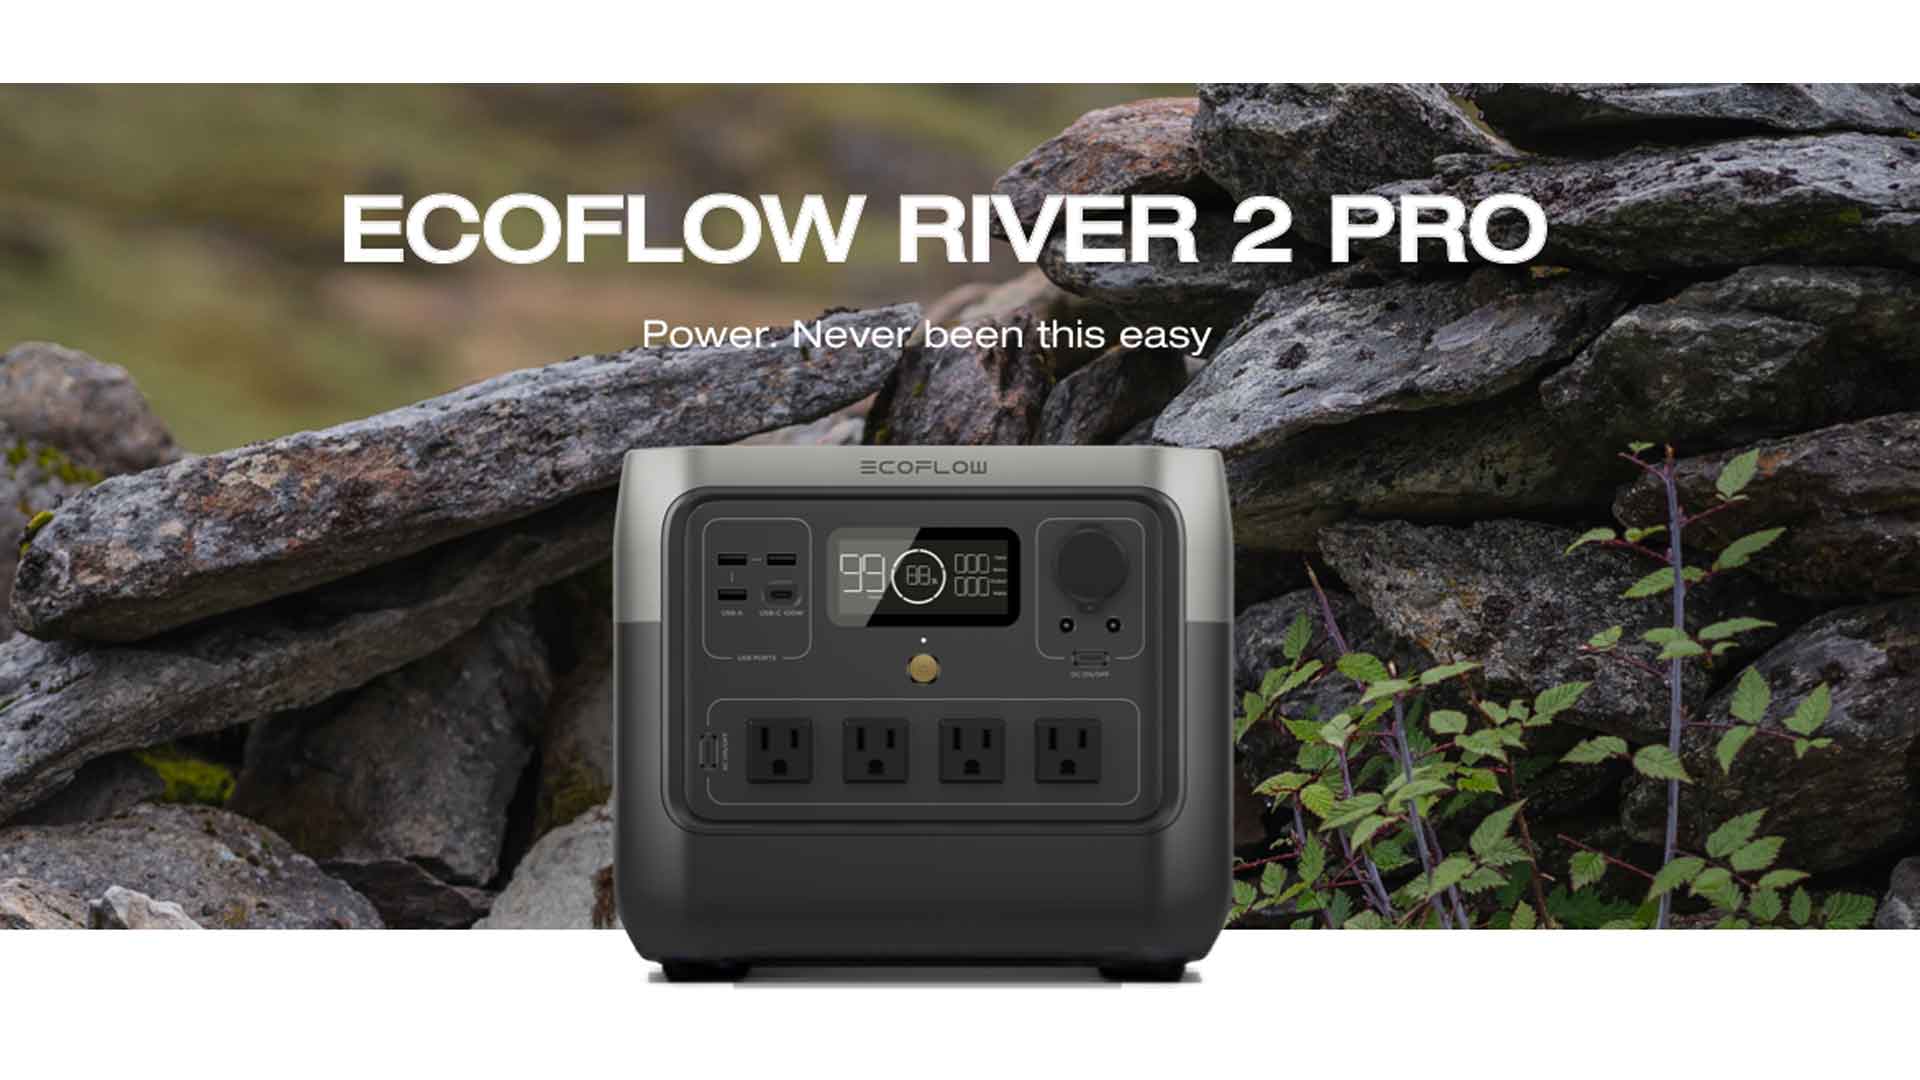 EcoFlow RIVER 2 Pro, EcoFlow RIVER 2 Pro review, EcoFlow RIVER 2 Pro price, EcoFlow RIVER 2 Pro features, EcoFlow RIVER 2 Pro specs, EcoFlow RIVER 2 Pro portable power station